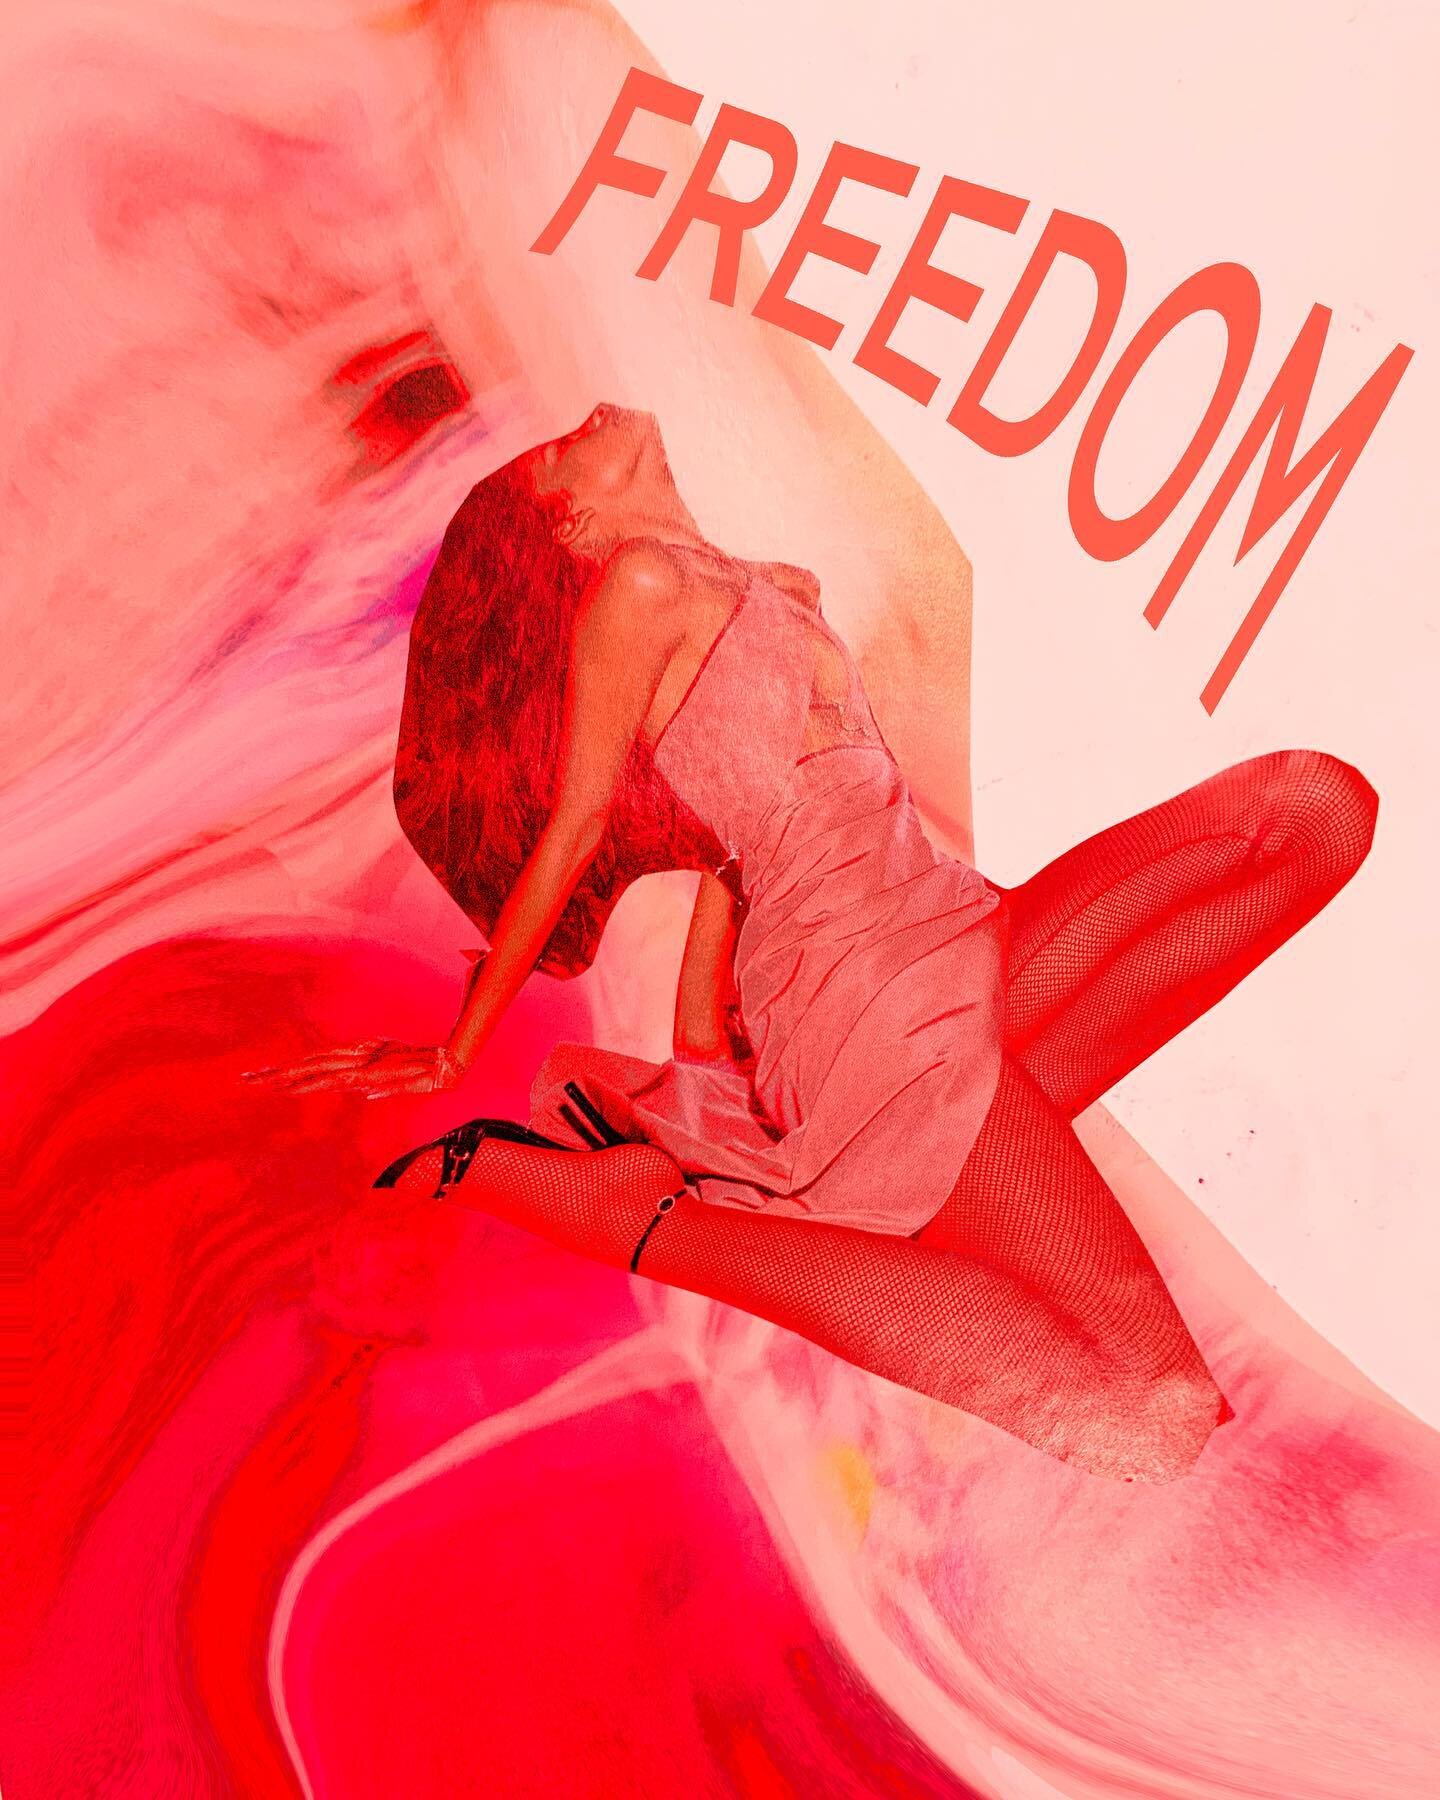 Part 3/3
FREEDOM 
Photoshop 
Monique M Rojas
2021
@zendaya @voguemagazine
#zendaya #vogue #art #collage